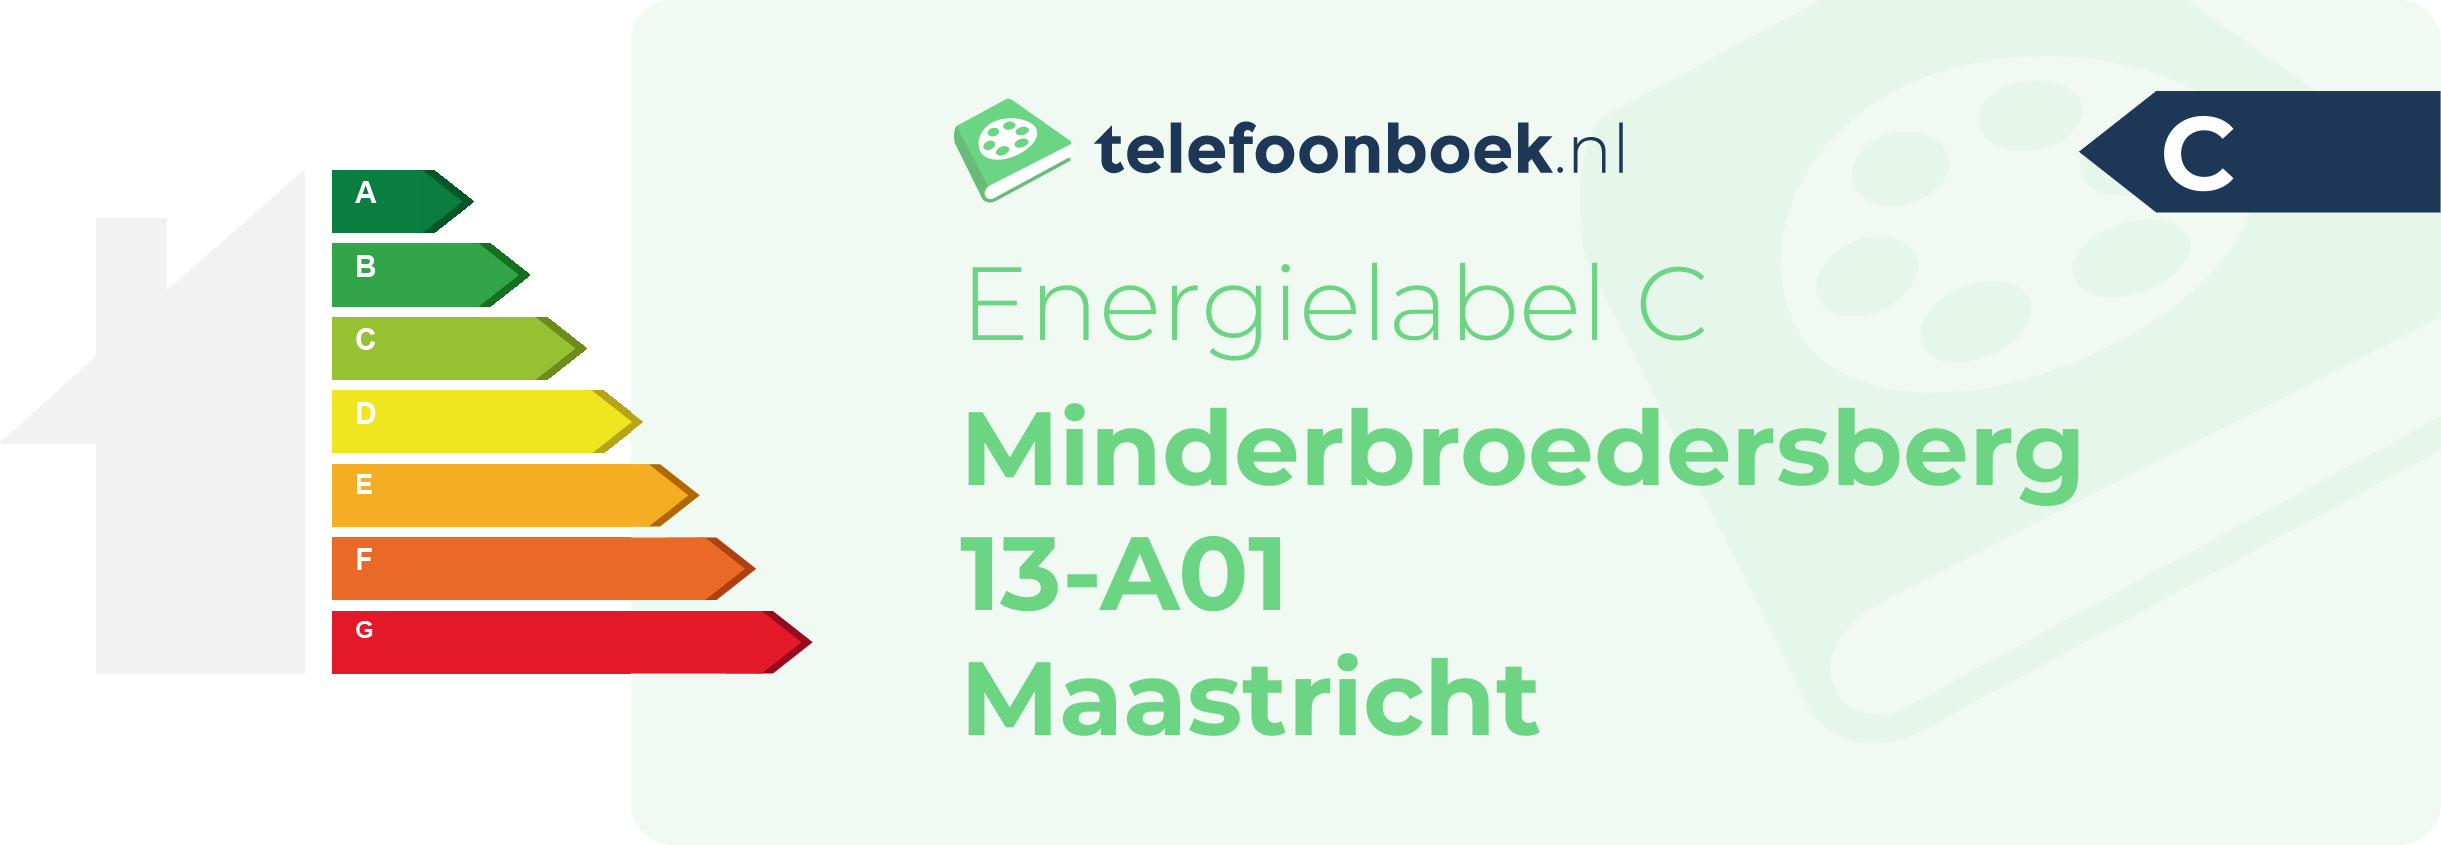 Energielabel Minderbroedersberg 13-A01 Maastricht